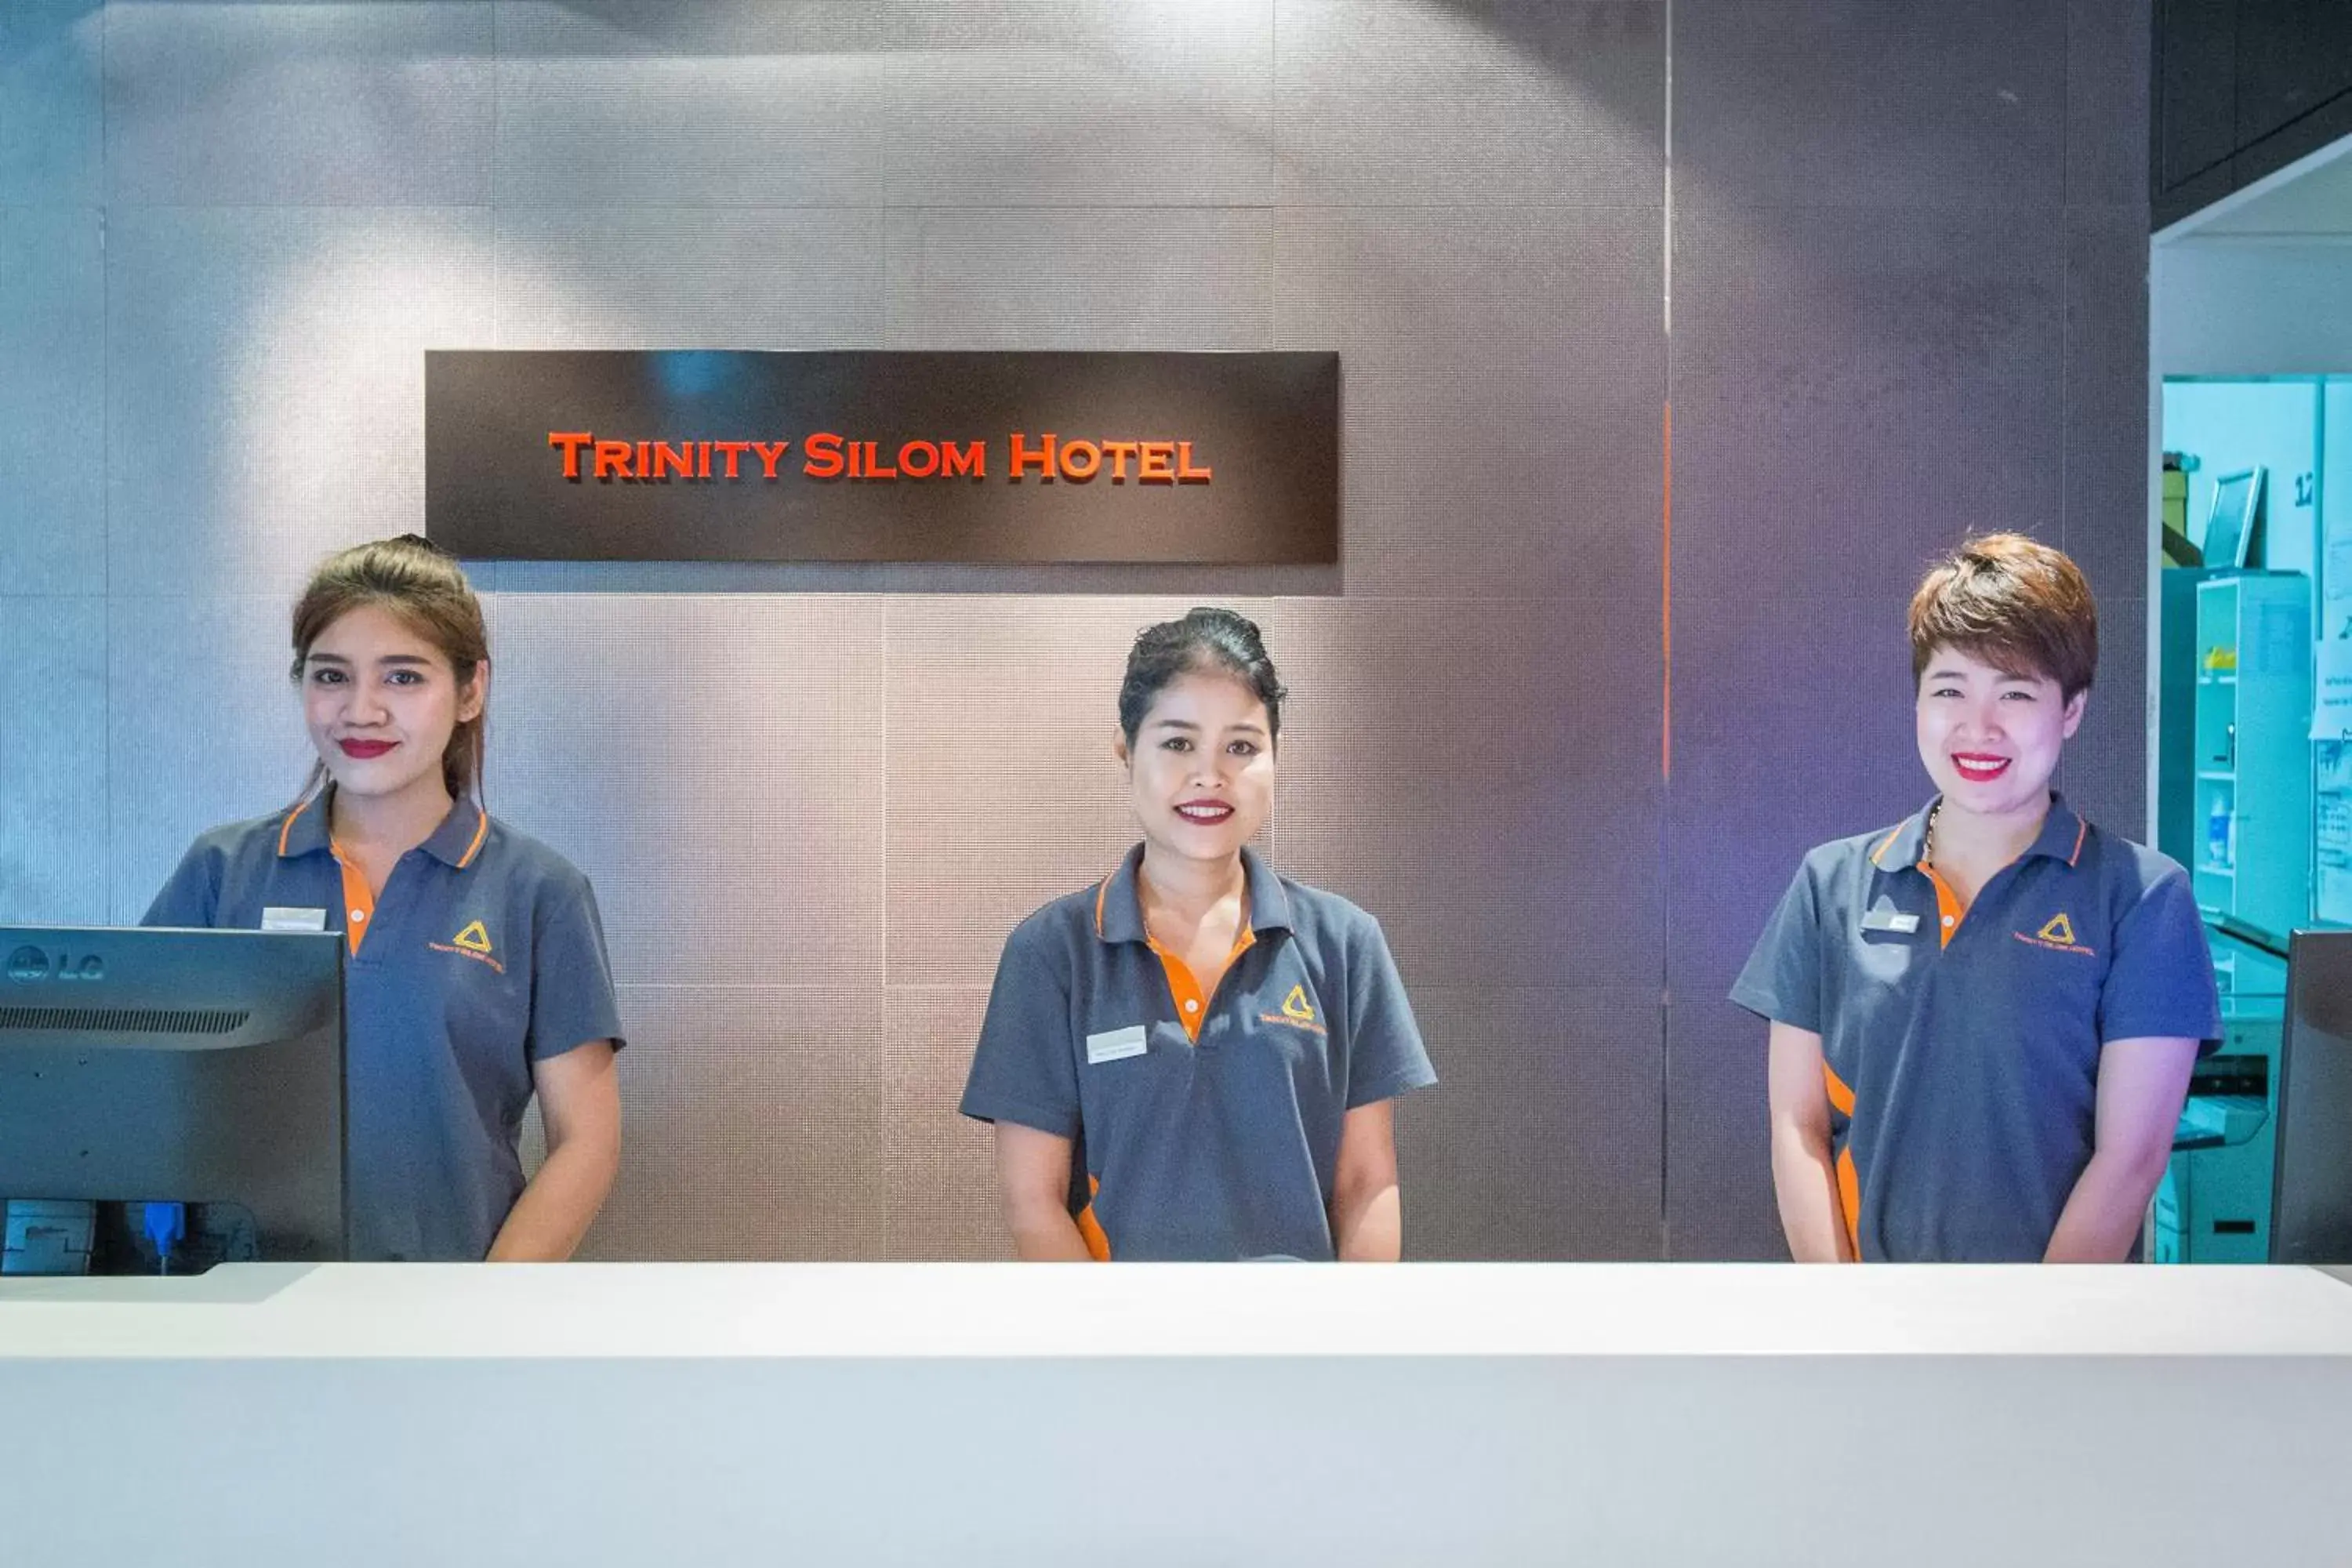 Staff in Trinity Silom Hotel